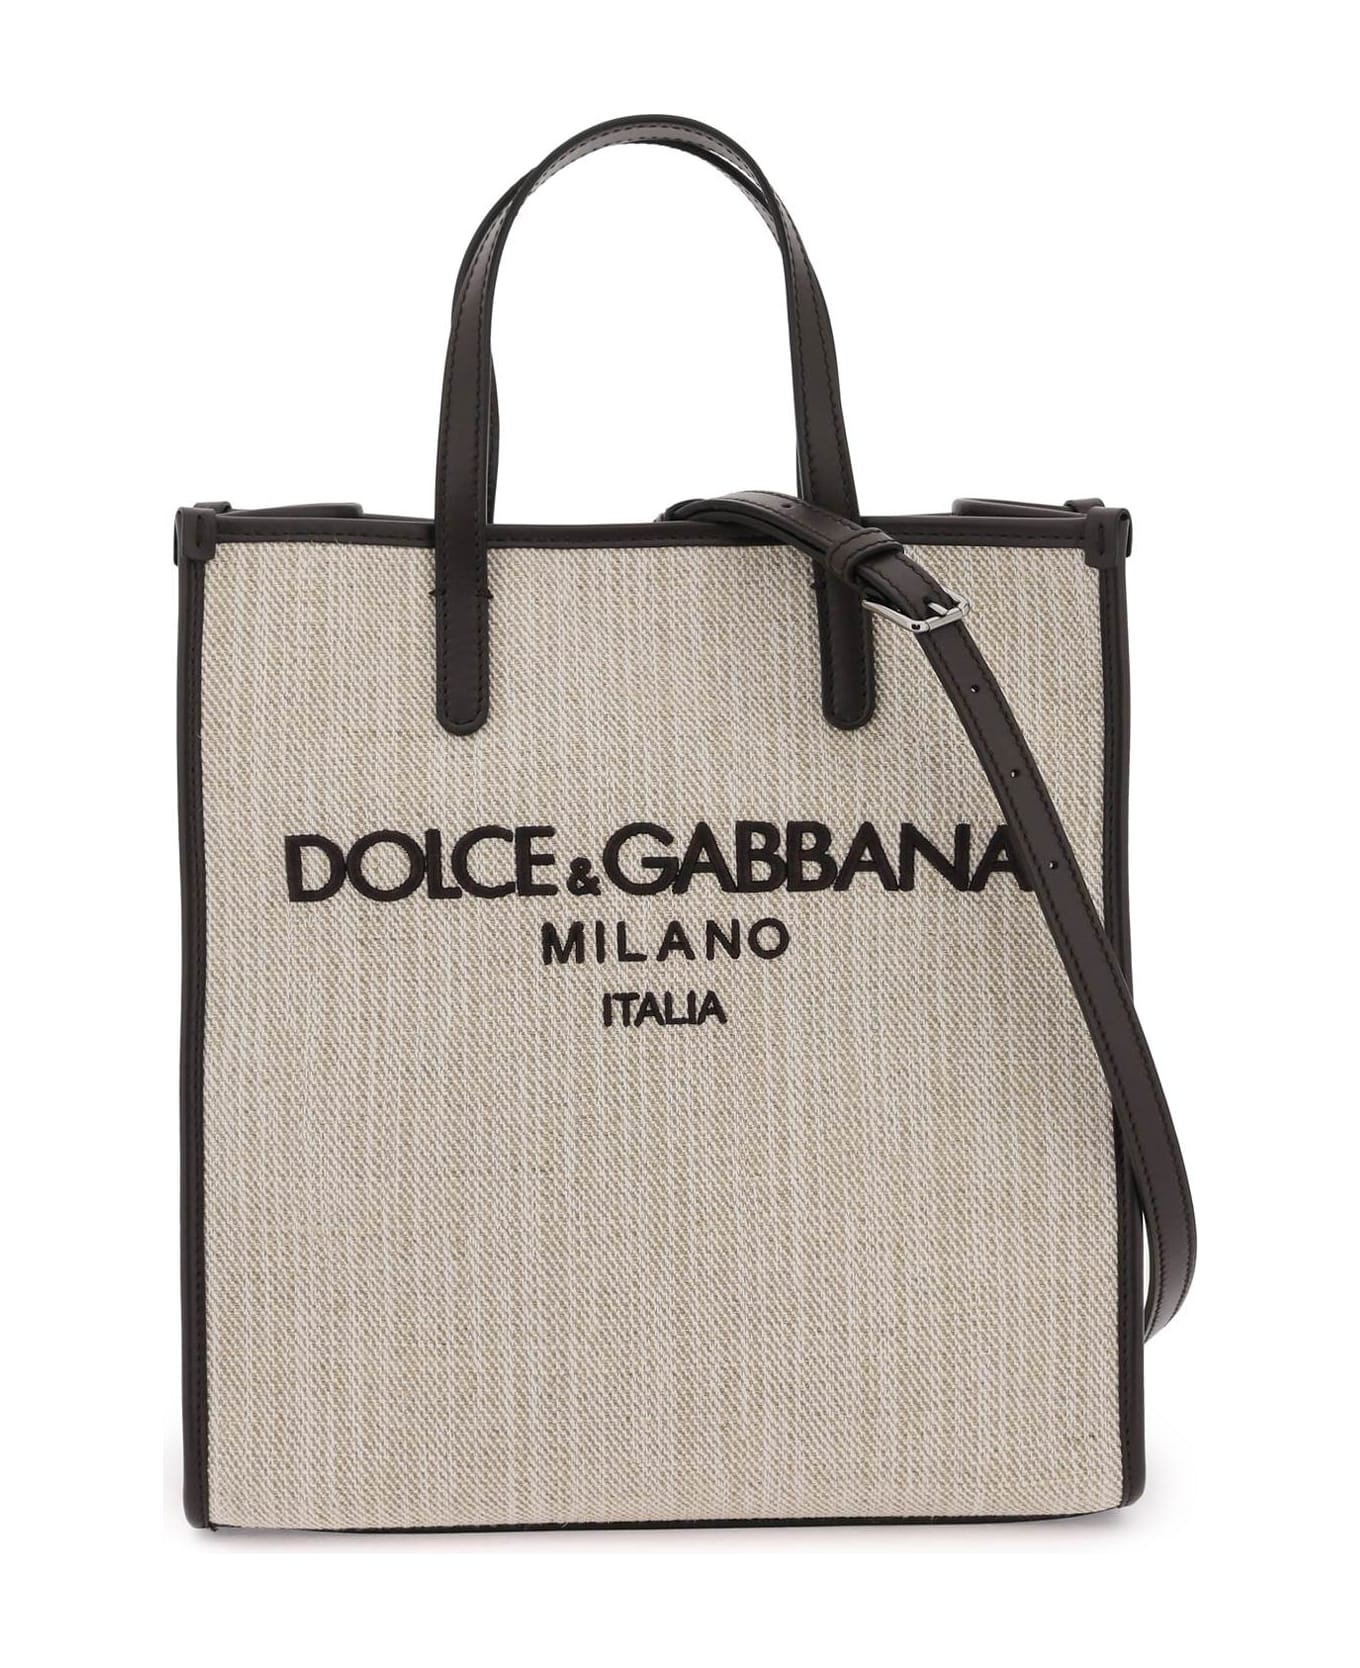 Dolce & Gabbana Textured Canvas Tote Bag - Beige